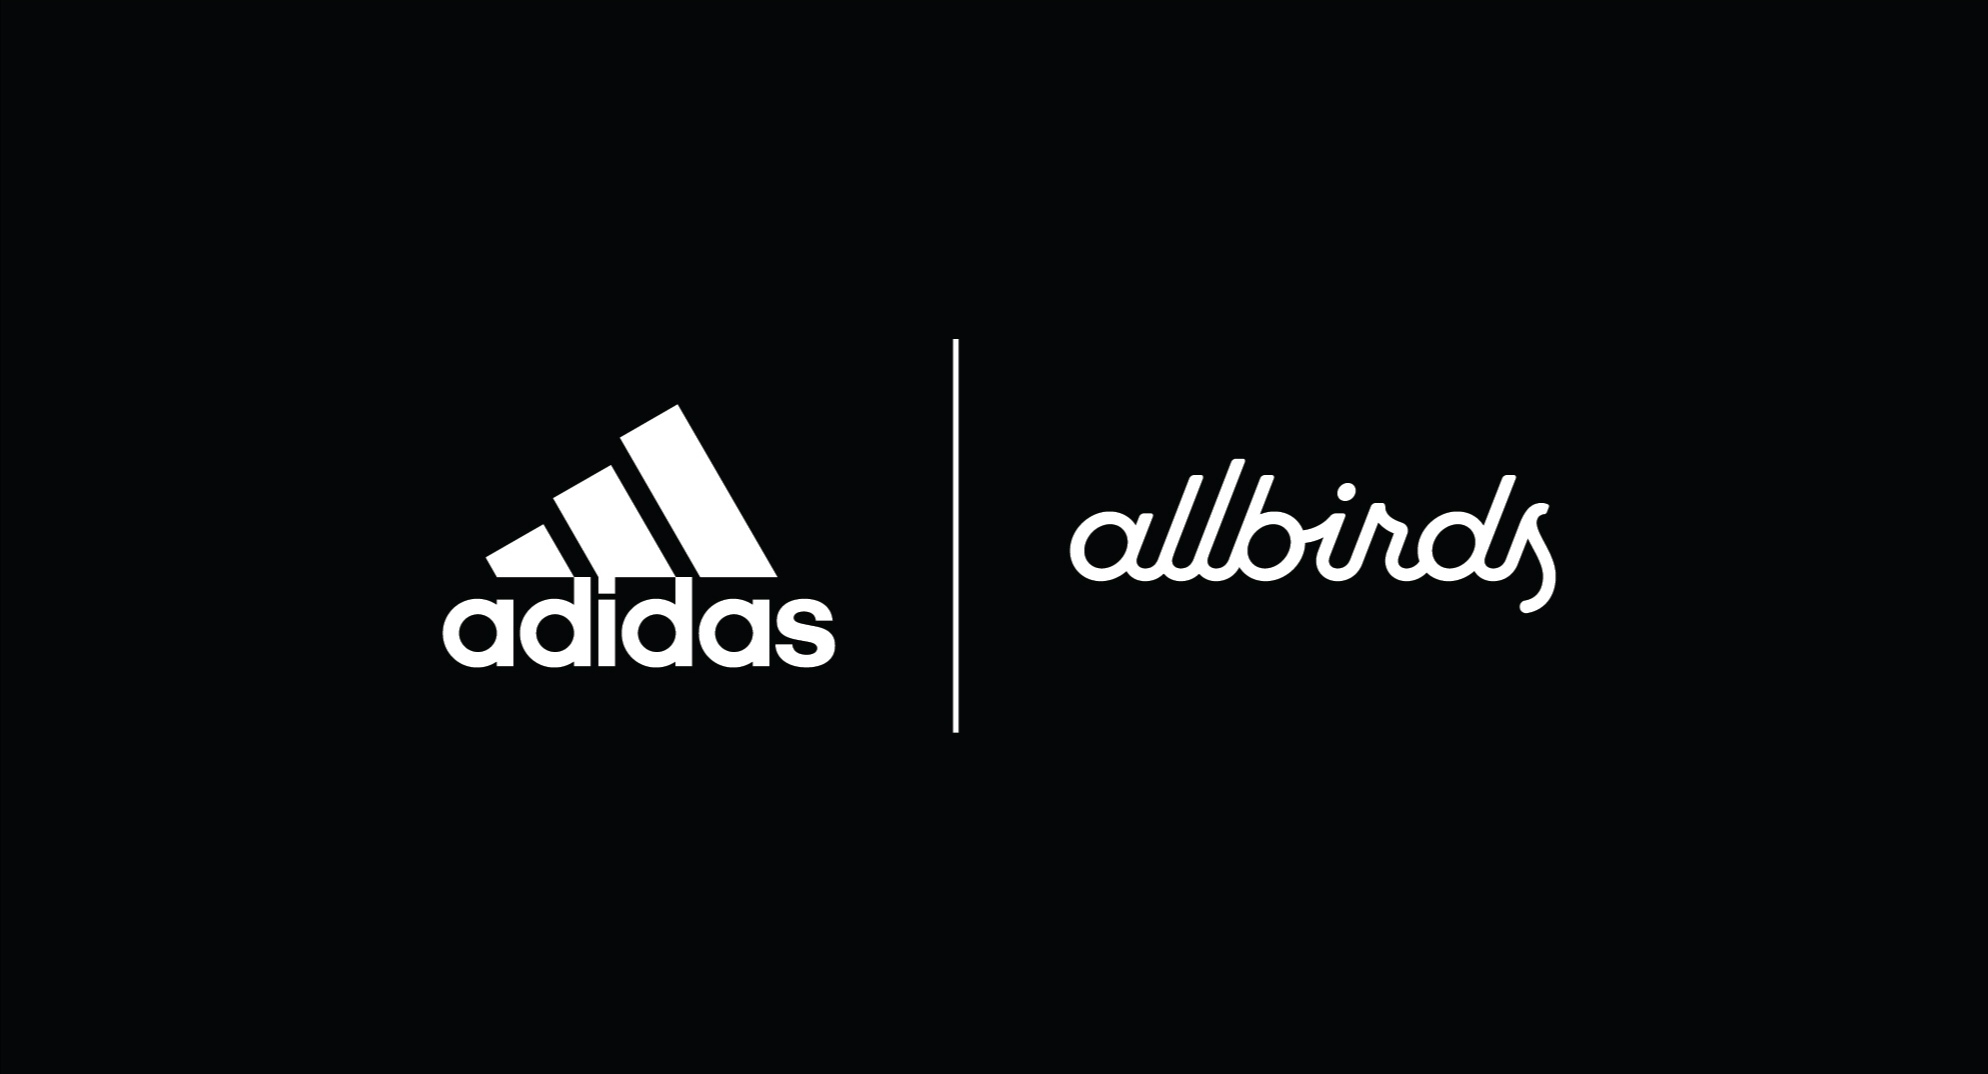 adidas携手Allbirds重新定义鞋服行业应对气候变化的行业标准